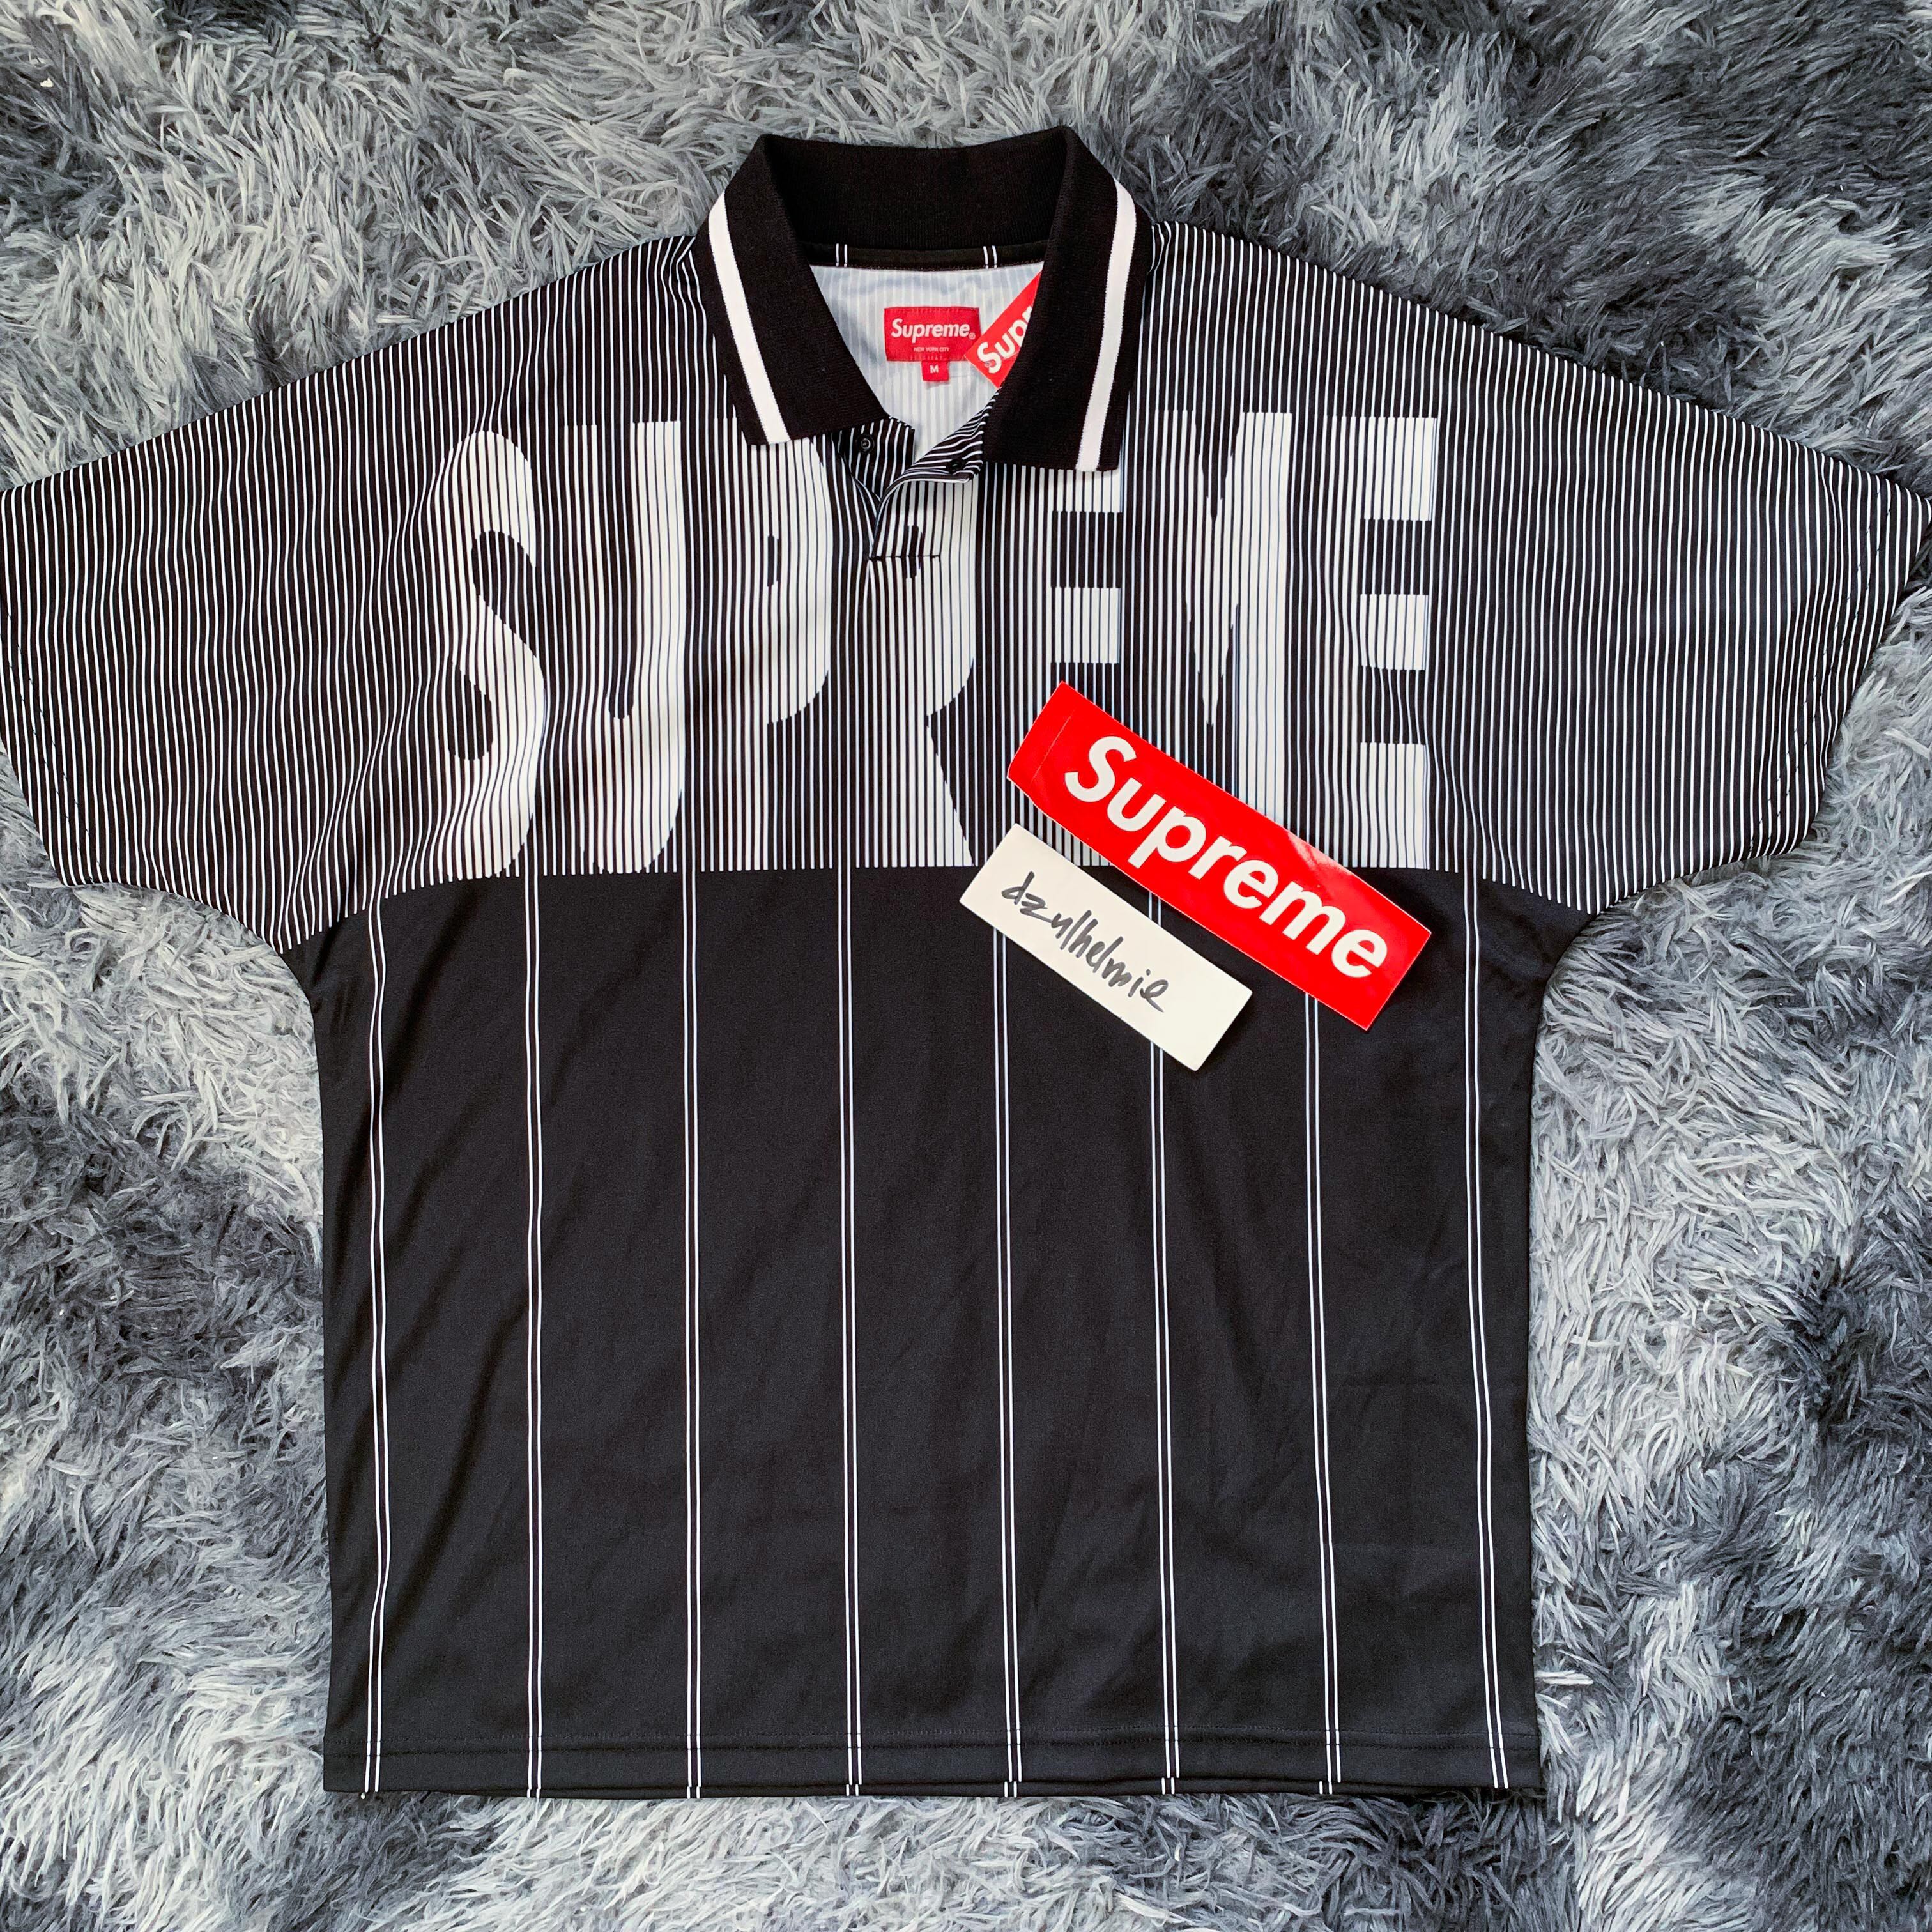 Supreme Soccer Polo Jersey Black, Men's Fashion, Tops & Sets